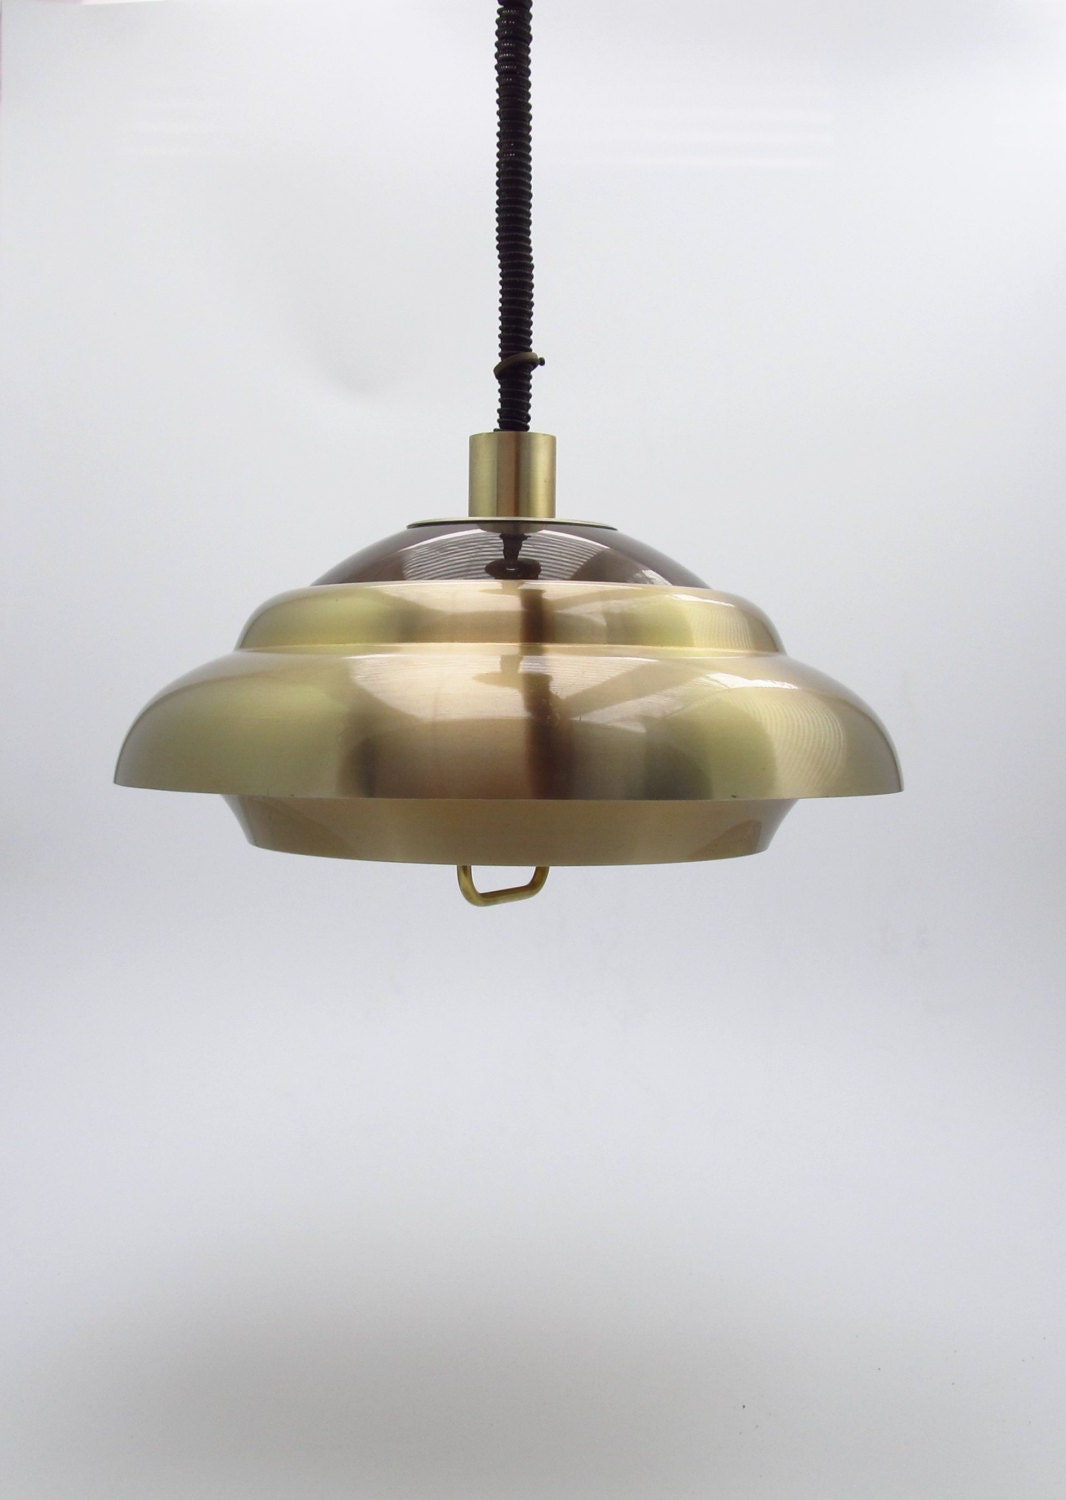 Dijkstra hanglamp uit de jaren 70 made in Holland, typisch nederlandse designlamp uit de zeventiger jaren